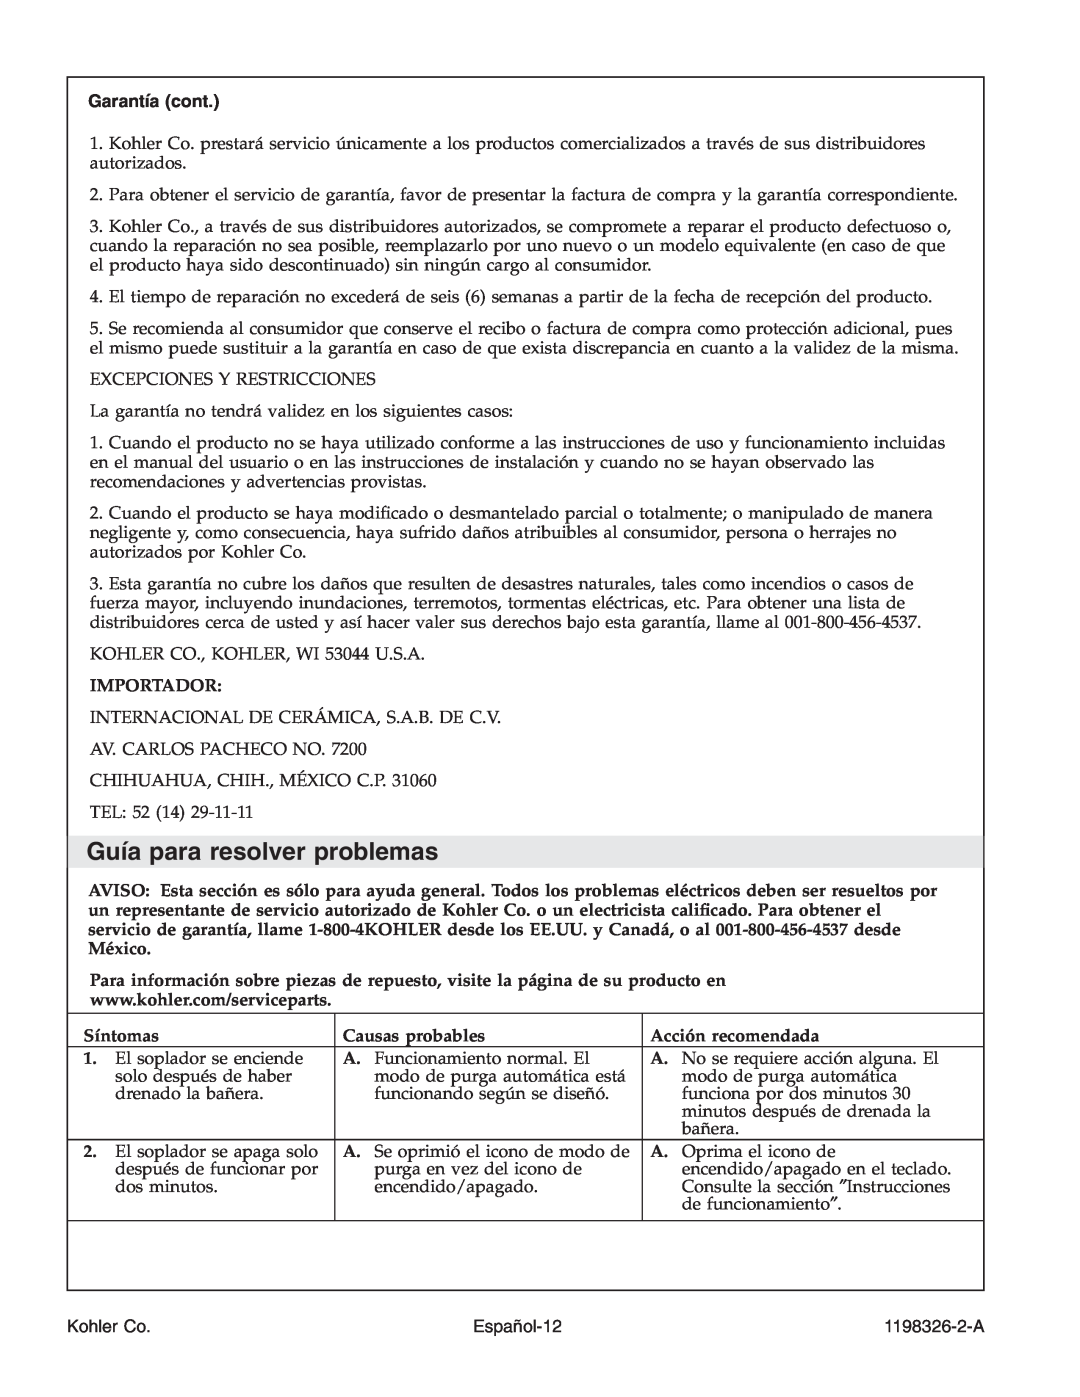 Kohler 1198326-2-A manual Guía para resolver problemas, Garantía cont, Español-12, Kohler Co 